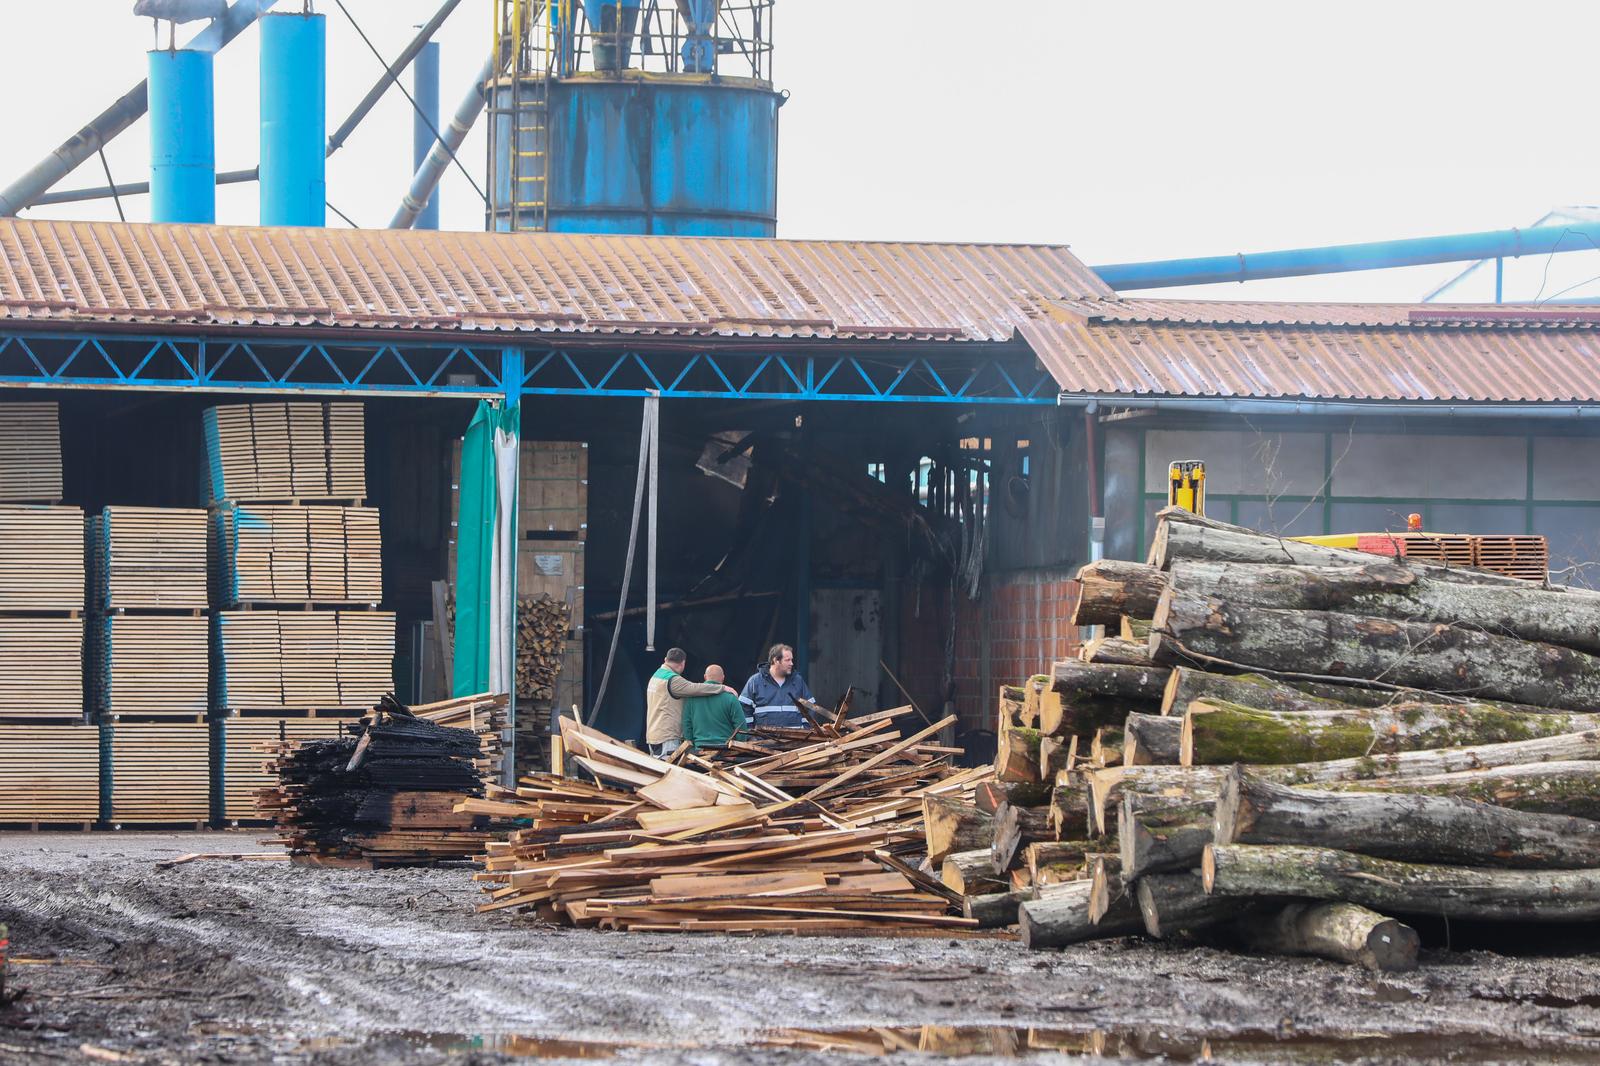 01.04.2023., Mraclin - U pozaru je izgorio pogon tvornice parketa Galekovic. Ministarstvo poljoprivrede u ponedjeljak je objavilo natječaj za dodjelu potpora male vrijednosti za poticanje razvoja poduzetnika koji obavljaju djelatnosti prerade drva i proizvodnje namještaja na području RH za 2023. godinu, vrijedan ukupno 3,98 milijuna eura.

Dodjeljivat će se bespovratna namjenska sredstva potpora male vrijednosti za ulaganje u proizvodnu tehnologiju i postrojenja, proizvodno-poslovni objekt, informacijsku i komunikacijsku tehnologiju i promotivne aktivnosti.

Intenzitet potpore je 70 posto od ukupno prihvatljivog troška, a najviši iznos po korisniku je sto tisuća eura za ulaganje u proizvodnu tehnologiju i postrojenja te proizvodno-poslovni objekt te 30 tisuća eura za ulaganje u informacijsku i komunikacijsku tehnologiju i 50 tisuća za promotivne aktivnosti.

Gornja granica potpore male vrijednosti koja se dodjeljuje jednom poduzetniku ne smije prelaziti dvjesto tisuća eura u tekućoj te tijekom prethodne dvije fiskalne godine.

Rok za podnošenje prijave počinje teći 1. lipnja i traje do 20. lipnja u 10 sati.
